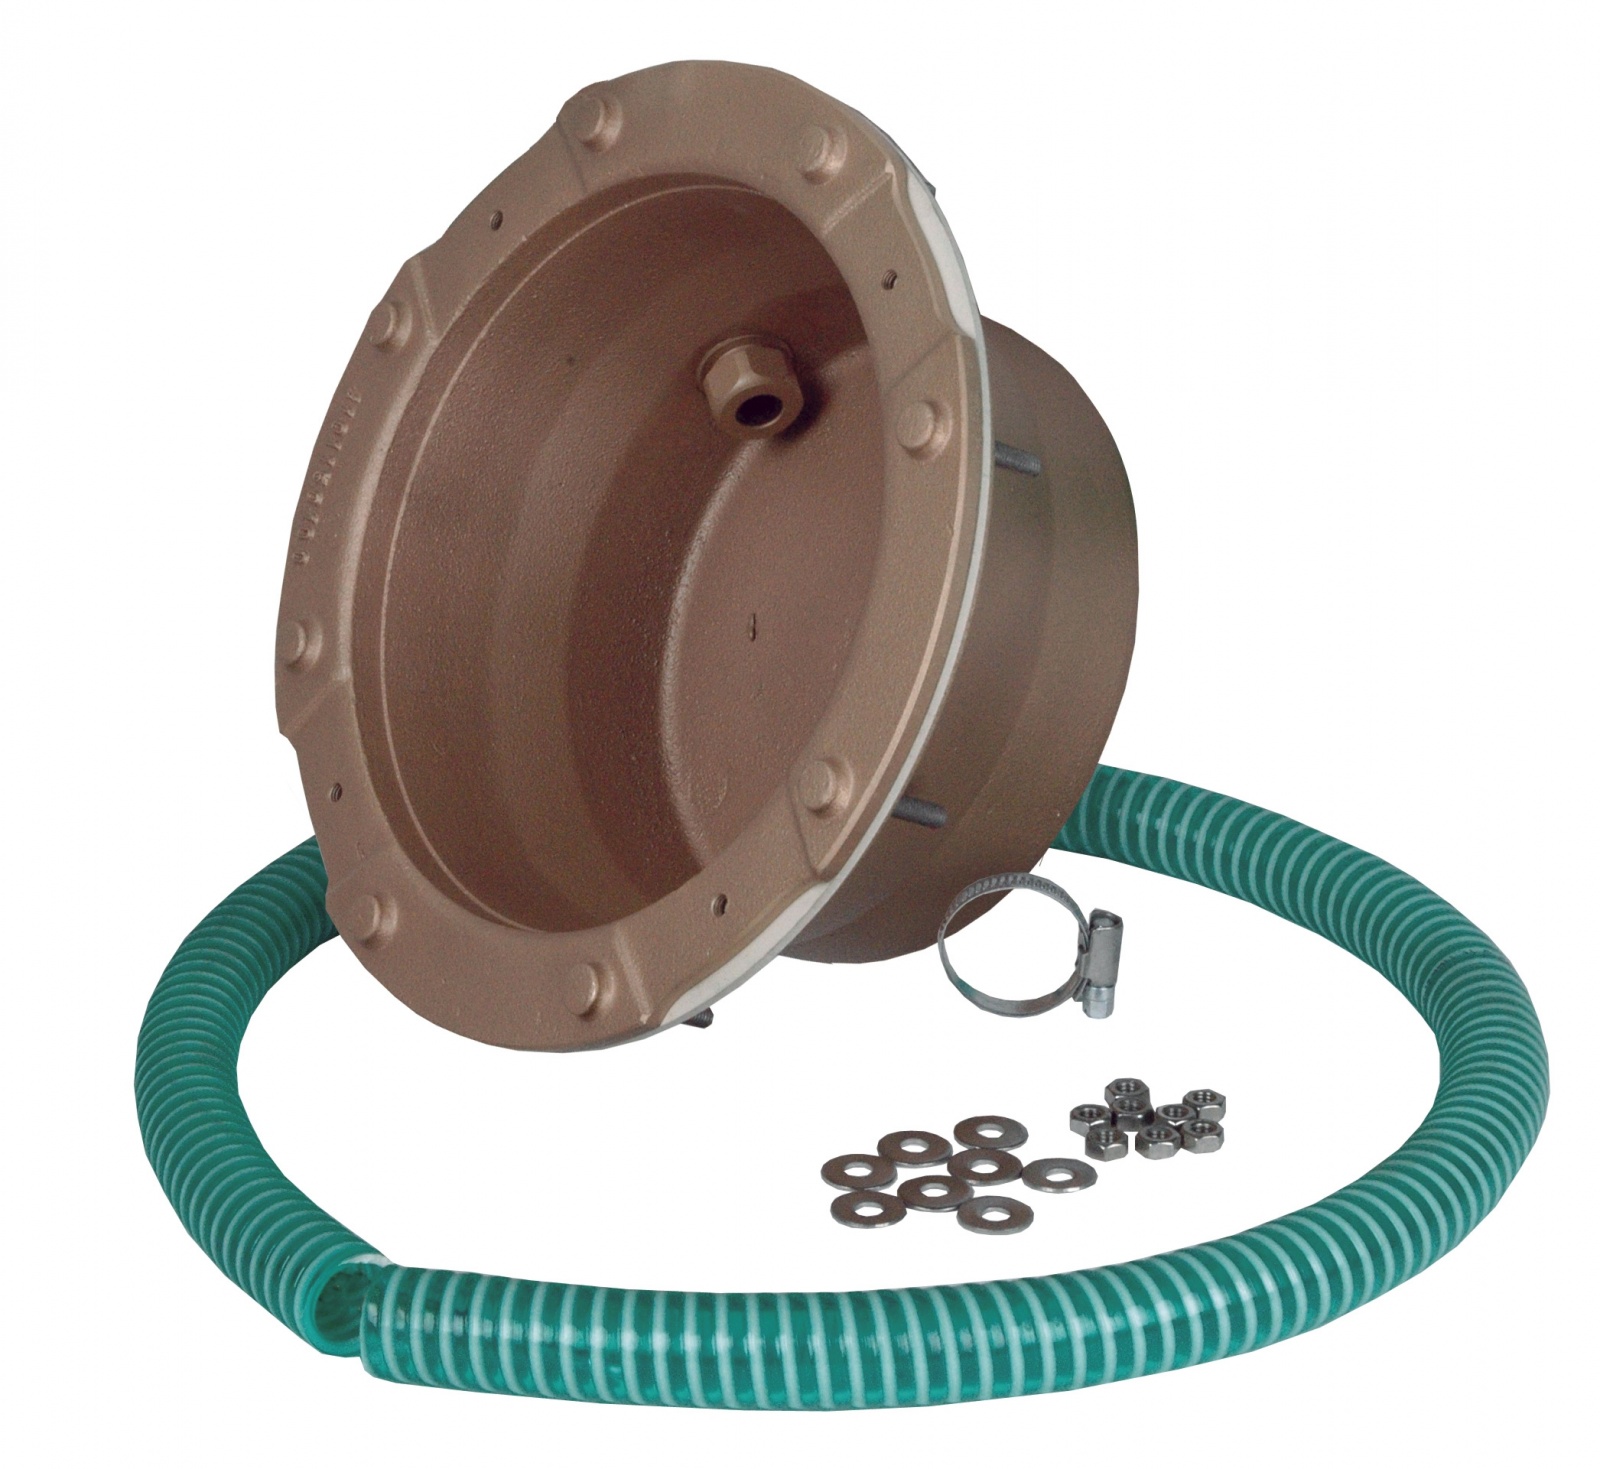 Boitier d’encastrement en laiton ou bronze pour projecteur et haut-parleur subaquatique ø 270 mm, pour bassin préfabriqué.